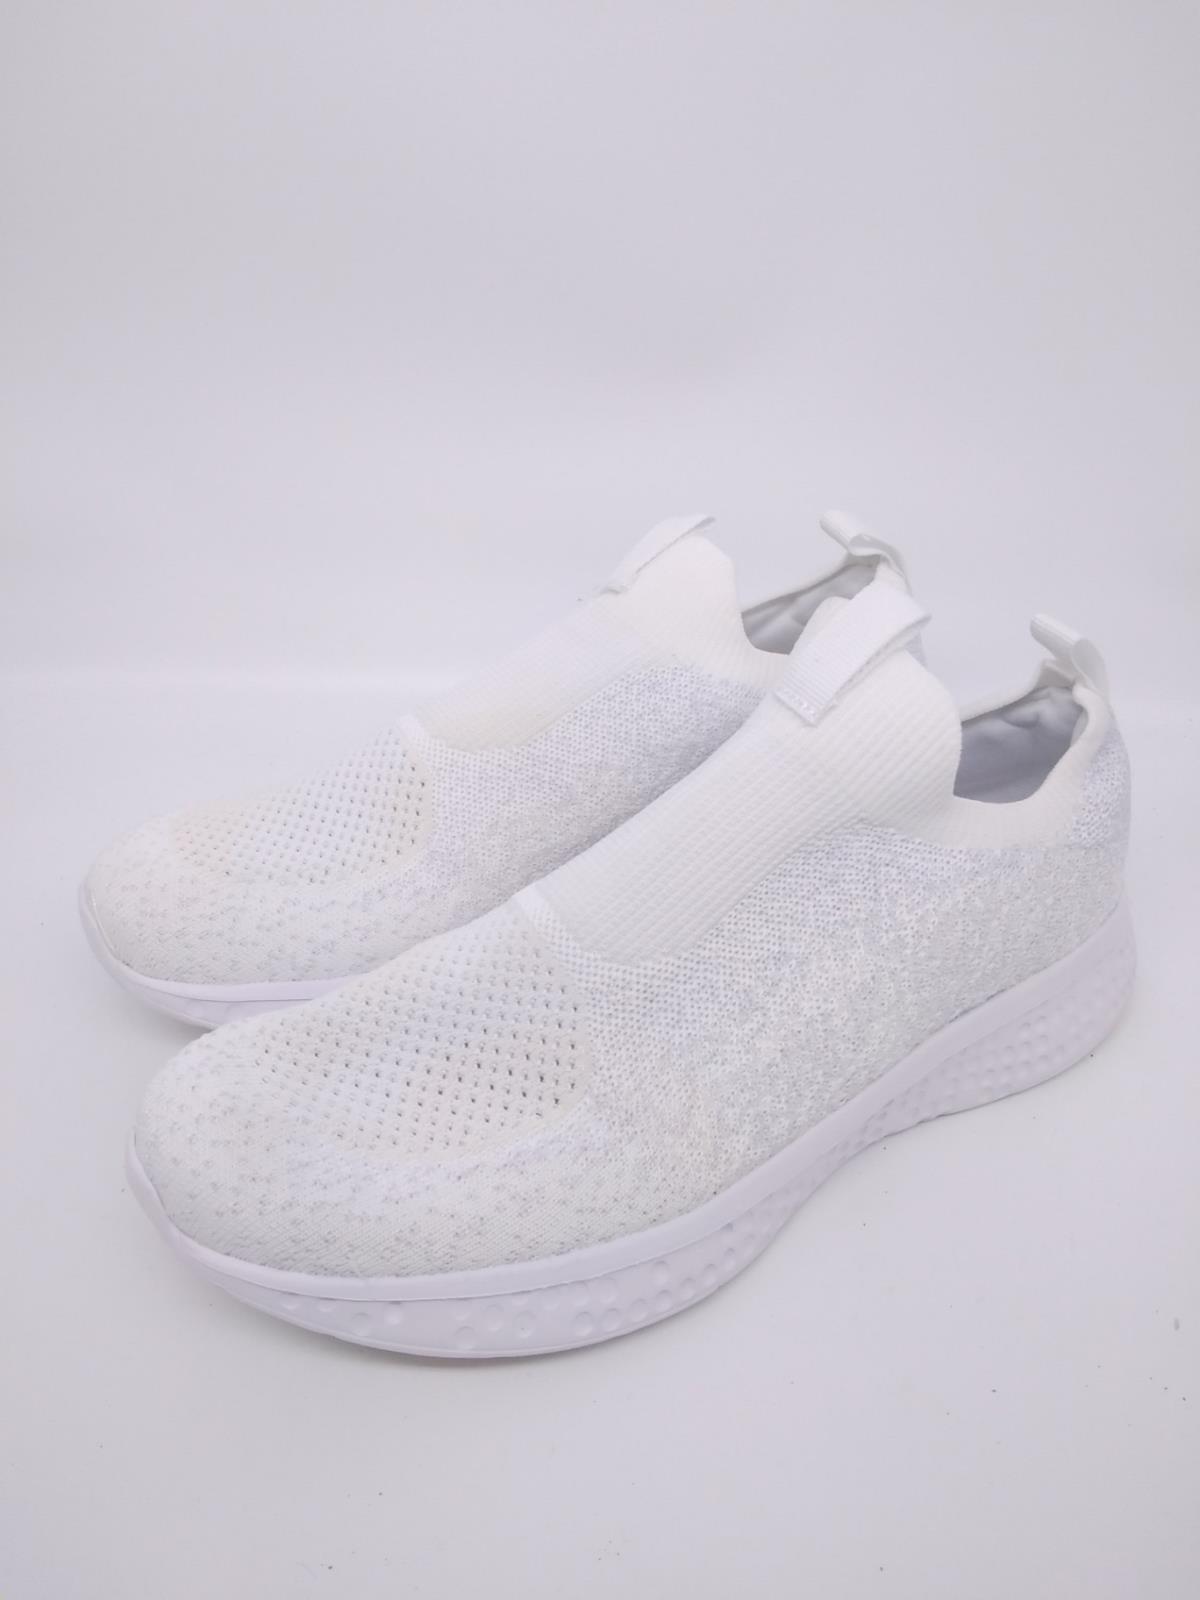 Avia Unisex Kids White Memory Foam Slip On Sneaker Athletic Shoes Size ...